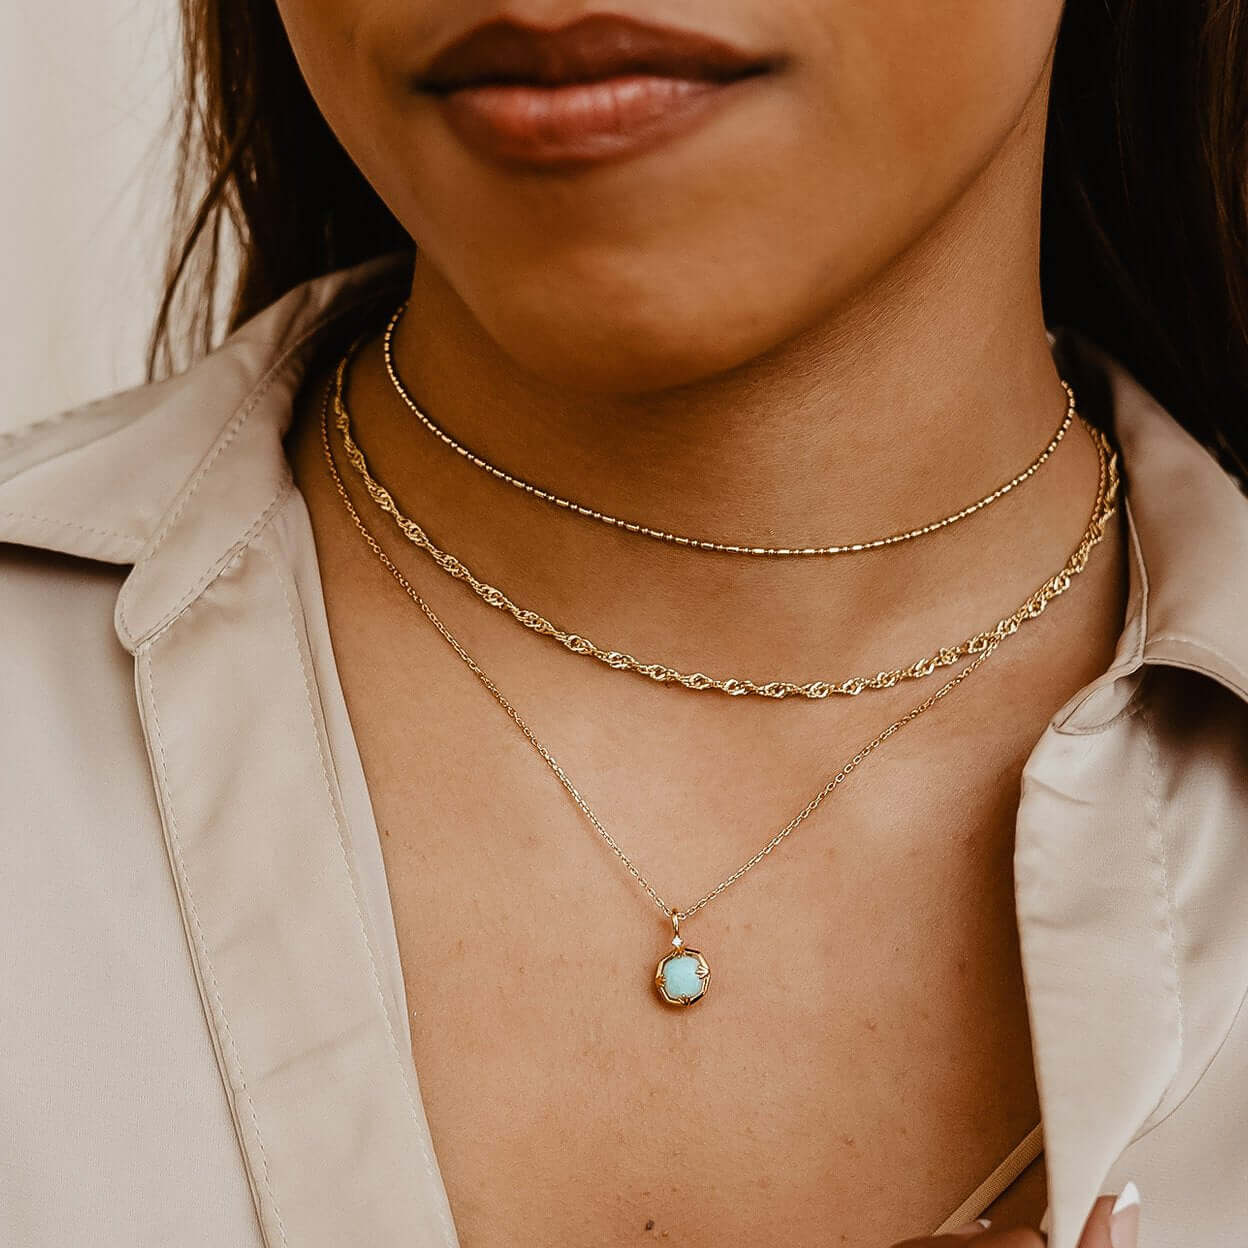 Vega Amazonite & Crystal Necklace - Double sided